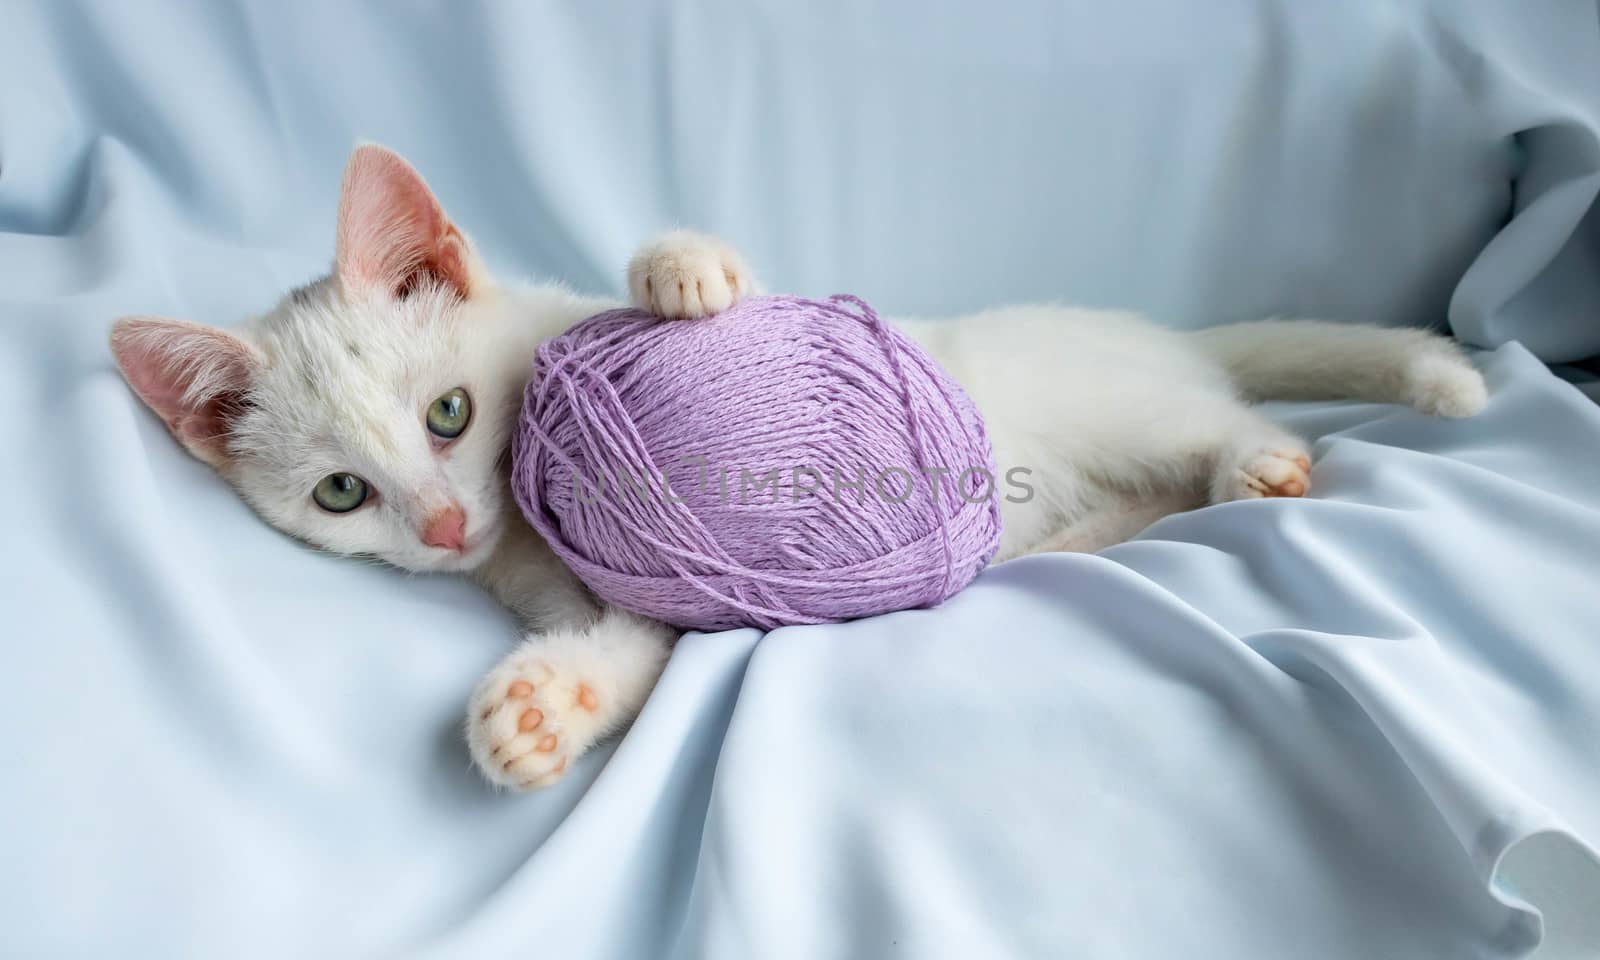 Kitten playing lying down, biting a ball of thread by lapushka62